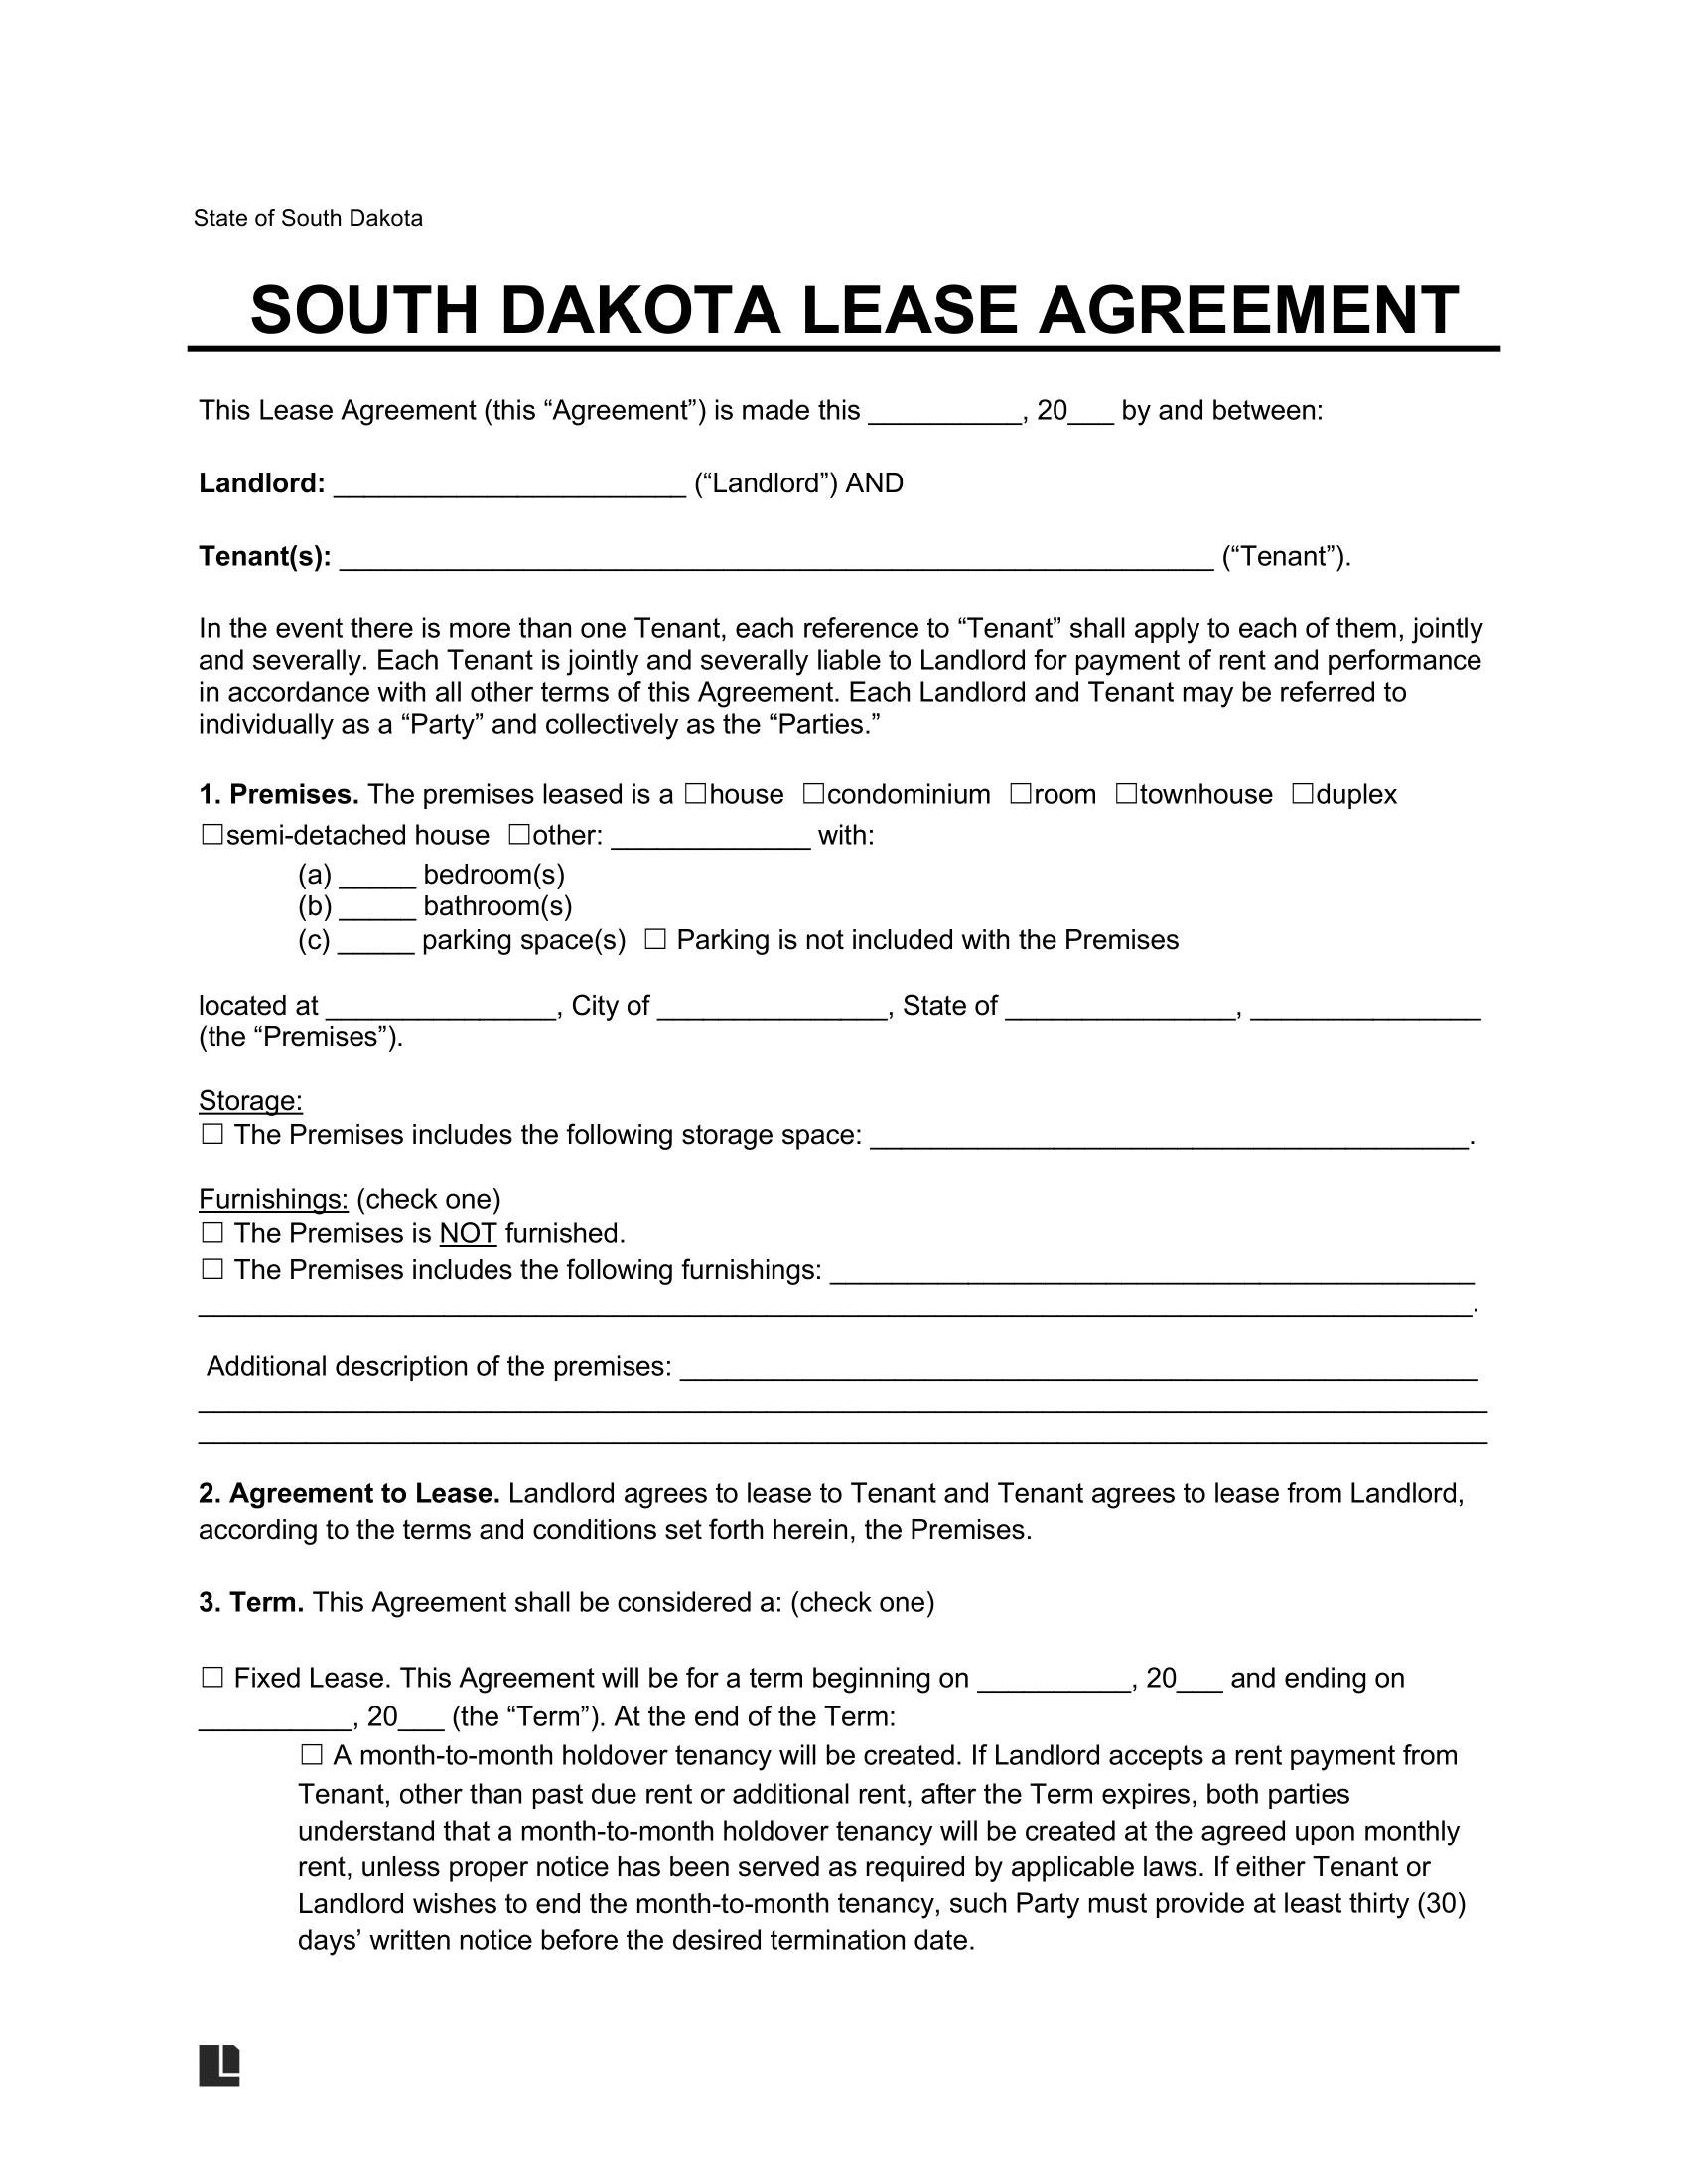 South Dakota Standard Residential Lease Agreement